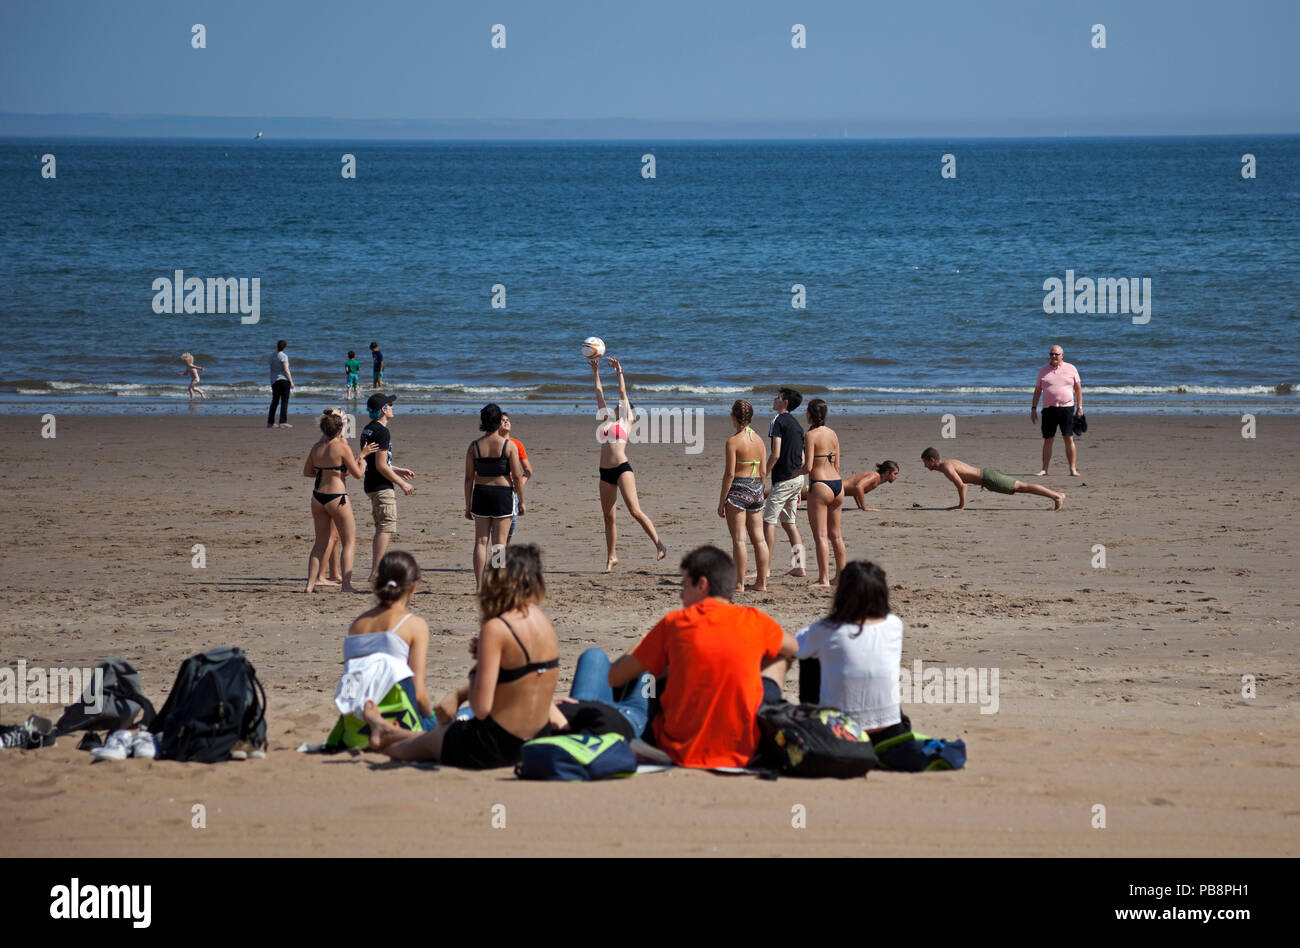 La plage de Portobello Édimbourg, Écosse le 27 juillet 2018. Météo France : foules affluent à la plage pour profiter des températures de 25 degrés la nuit la foudre spectaculaire après de fortes averses sont attendus plus tard aujourd'hui et pendant la fin de semaine. Banque D'Images